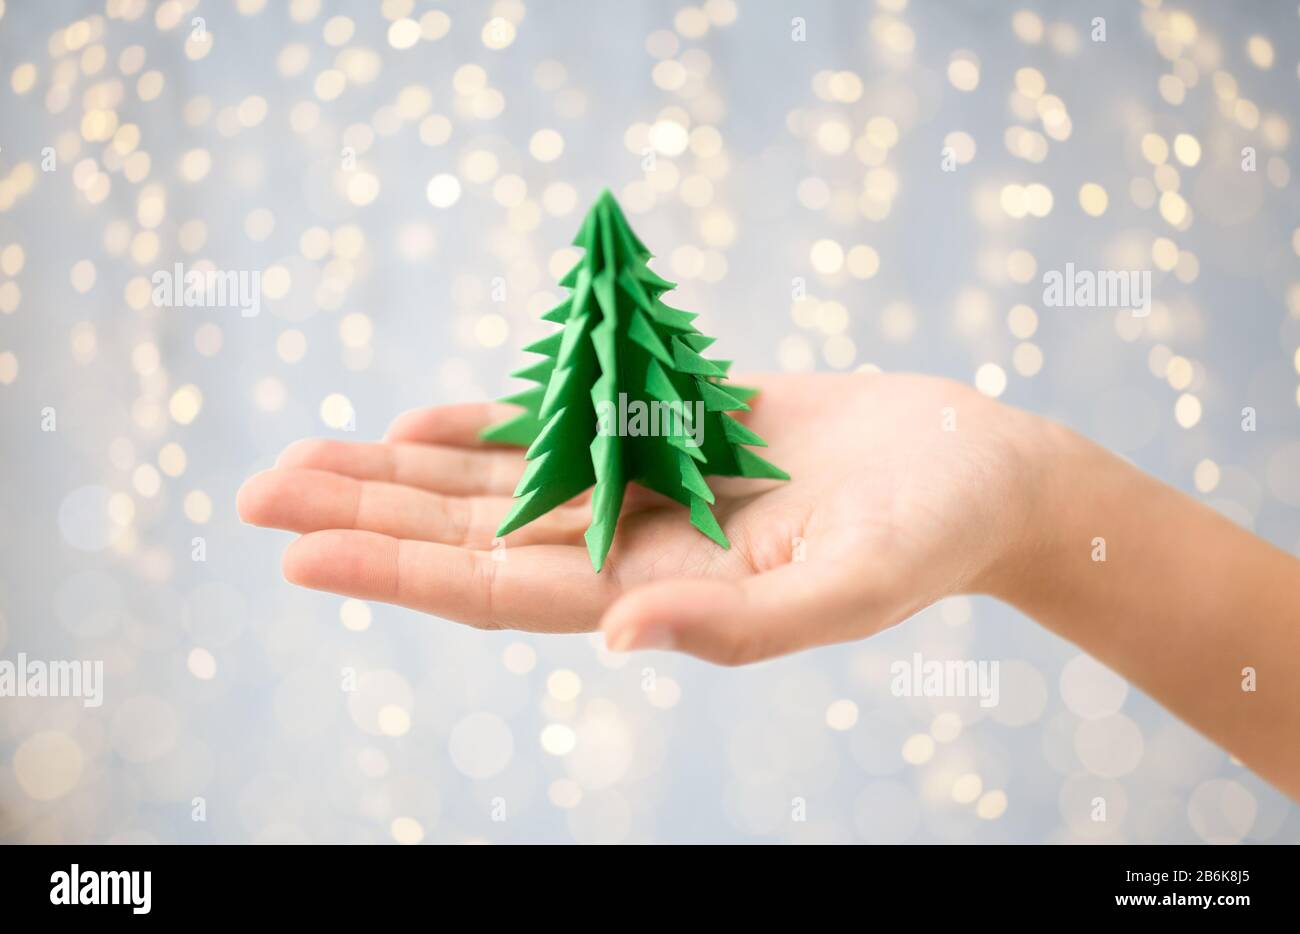 vacances d'hiver, nouvelle année et concept d'artisanat - main tenant le papier vert origami arbre de noël sur fond de lumières de fête Banque D'Images